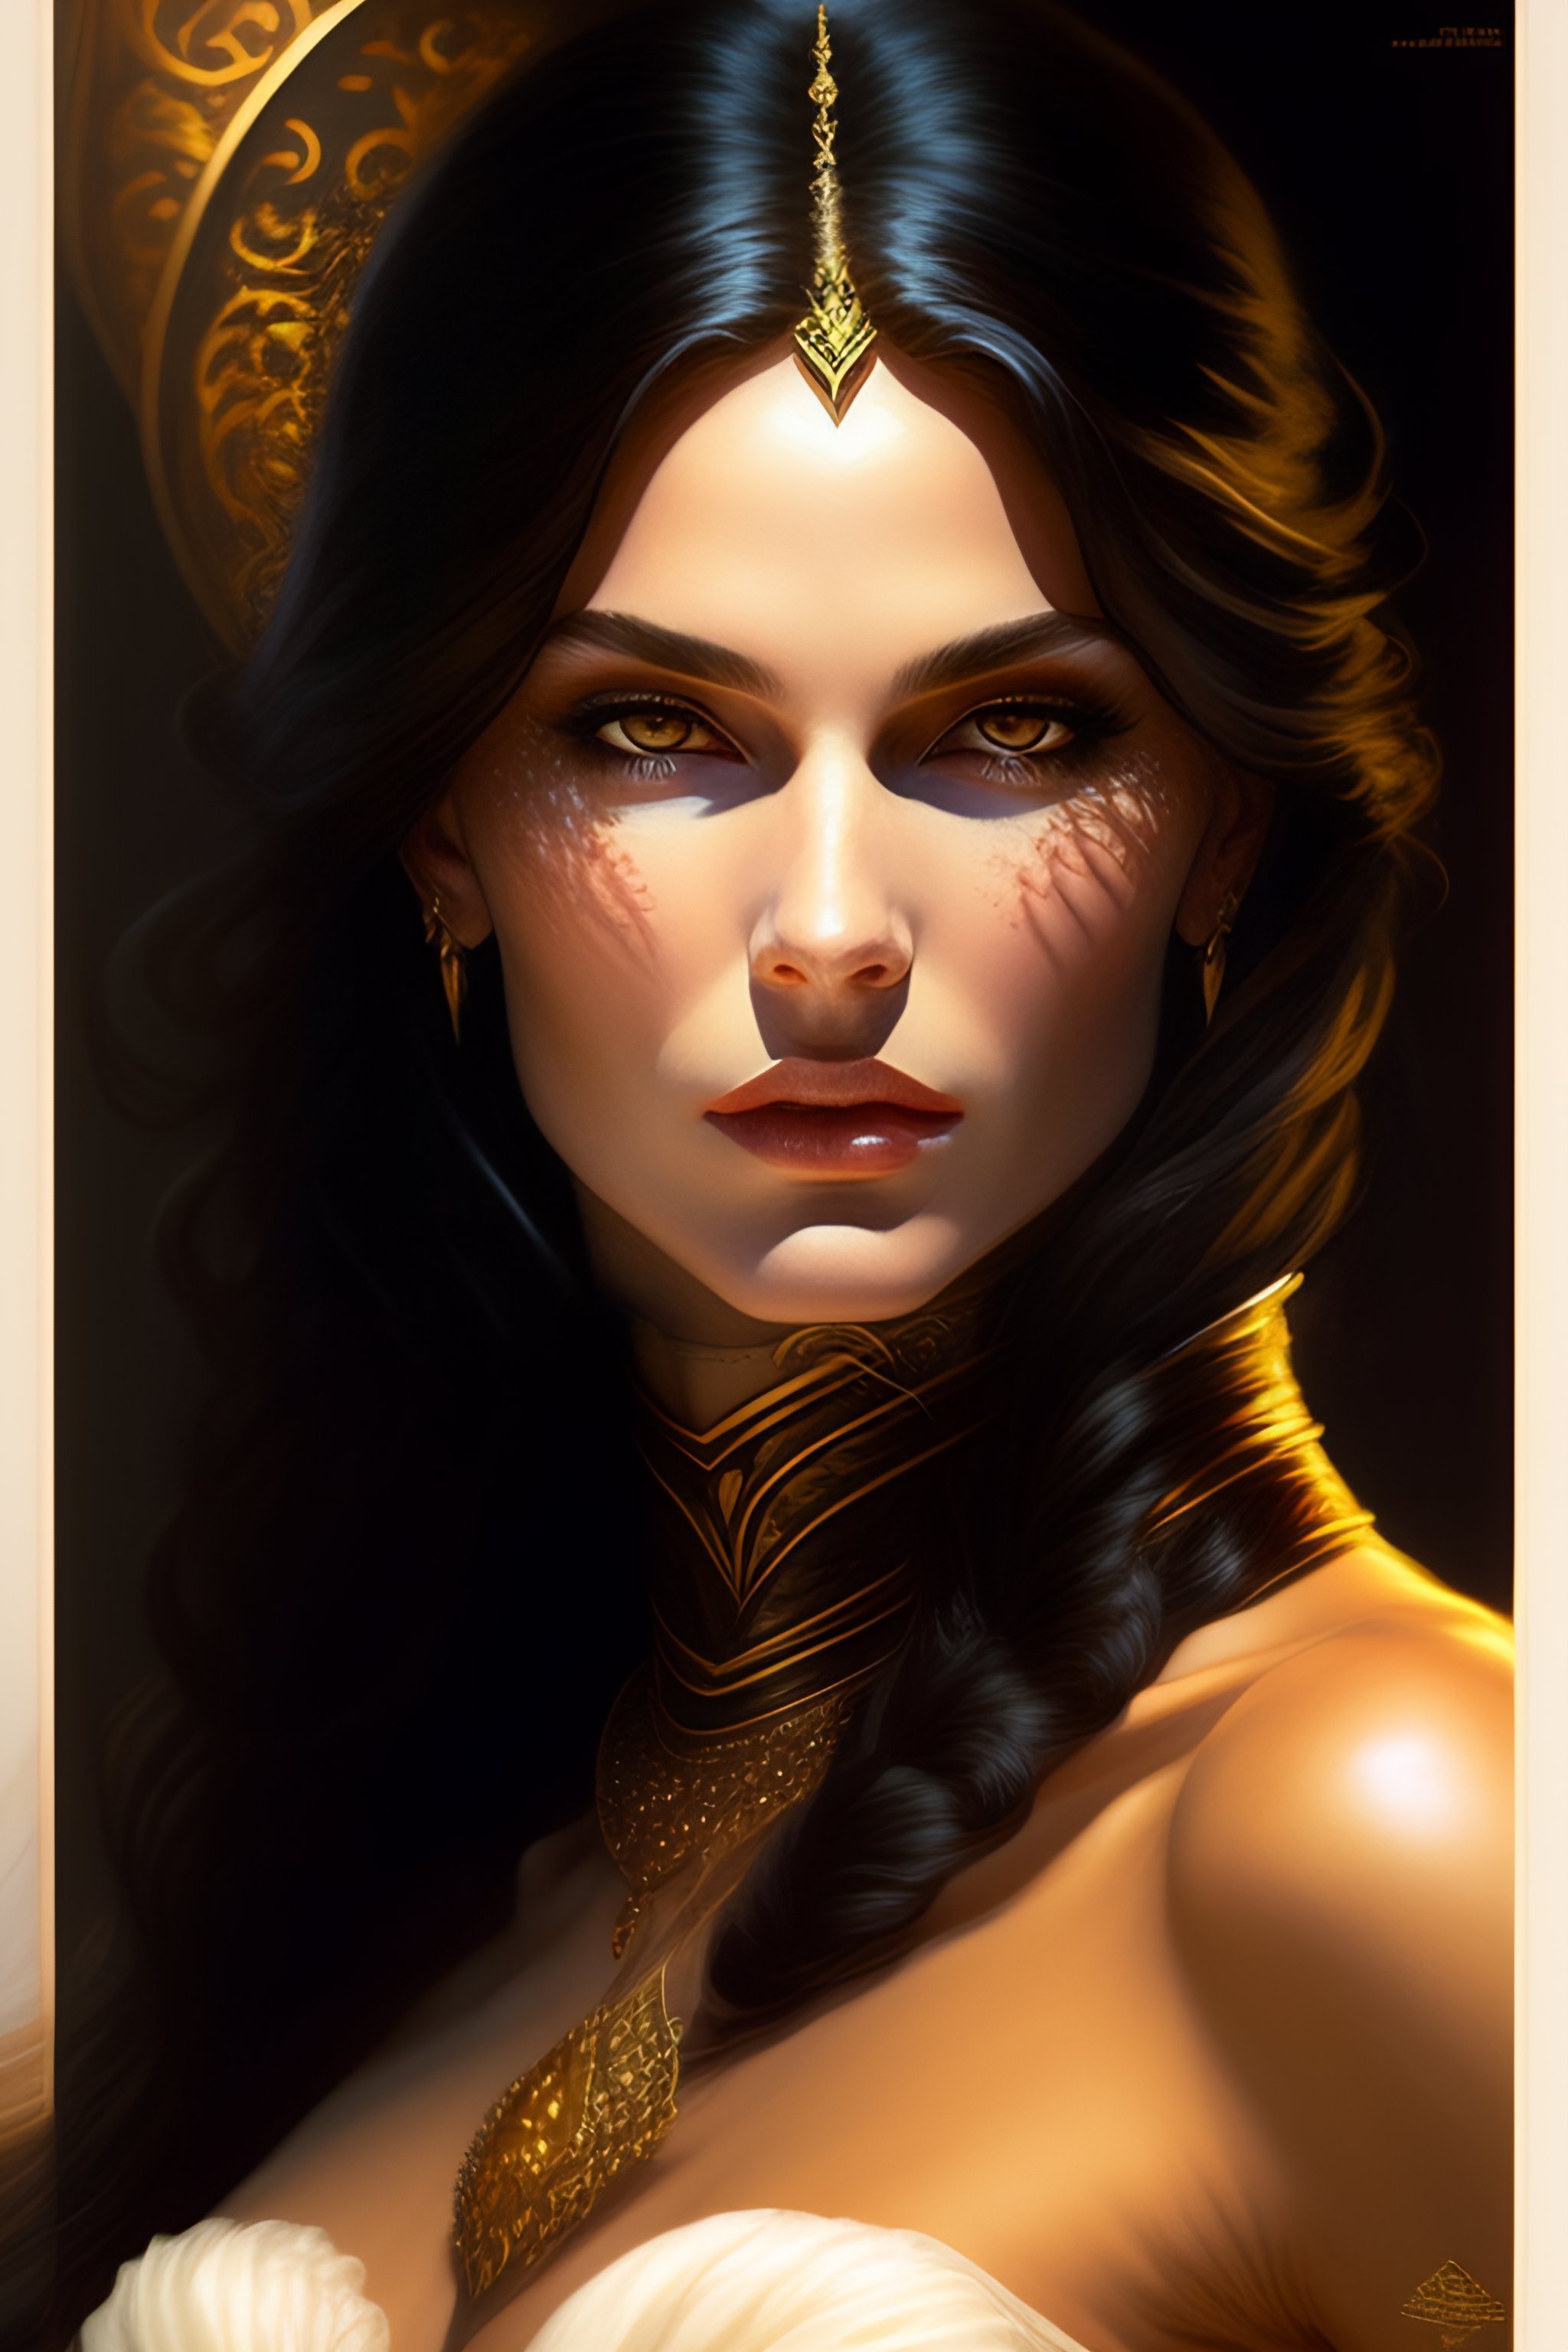 Lexica - A queen vampire, dark, piercing eyes, gentle expression ...